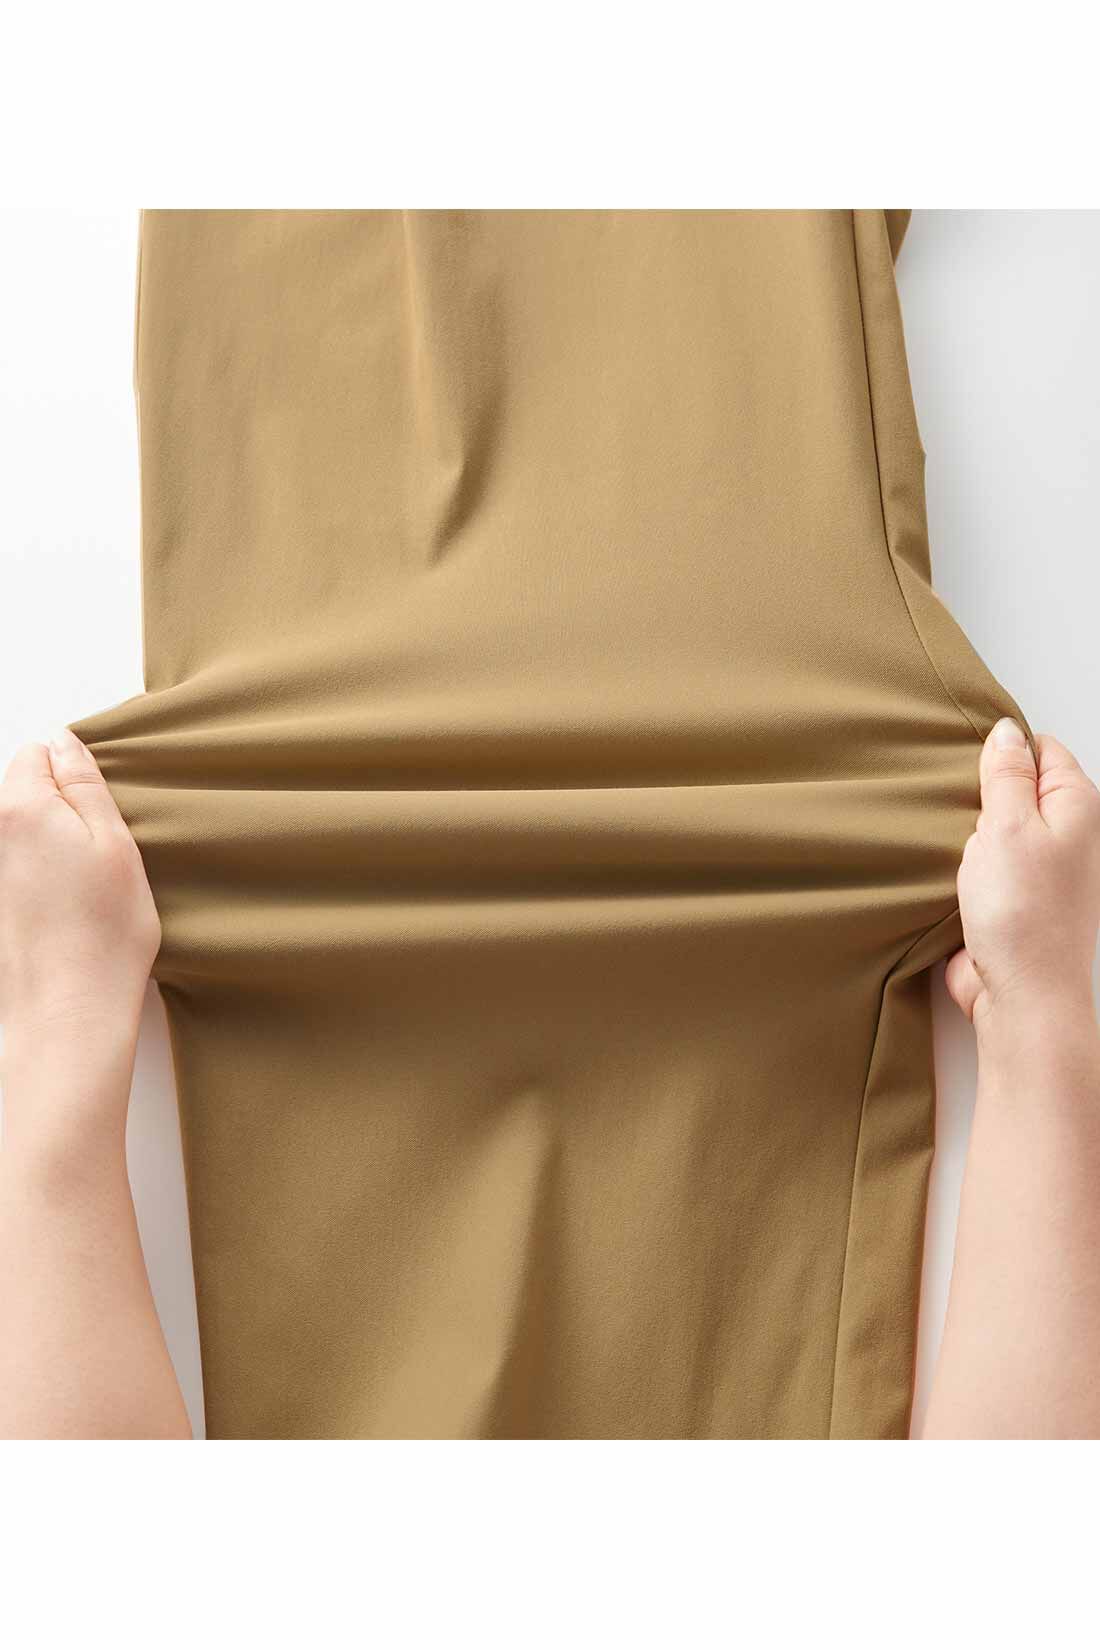 IEDIT|【まとめ買いキャンペーン】IEDIT[イディット]　ぐいっとしなやかで快適な美脚見えサイドタック ナイスラっとエアノビワイドパンツ|ぐいっと伸びて快適な布はく素材。